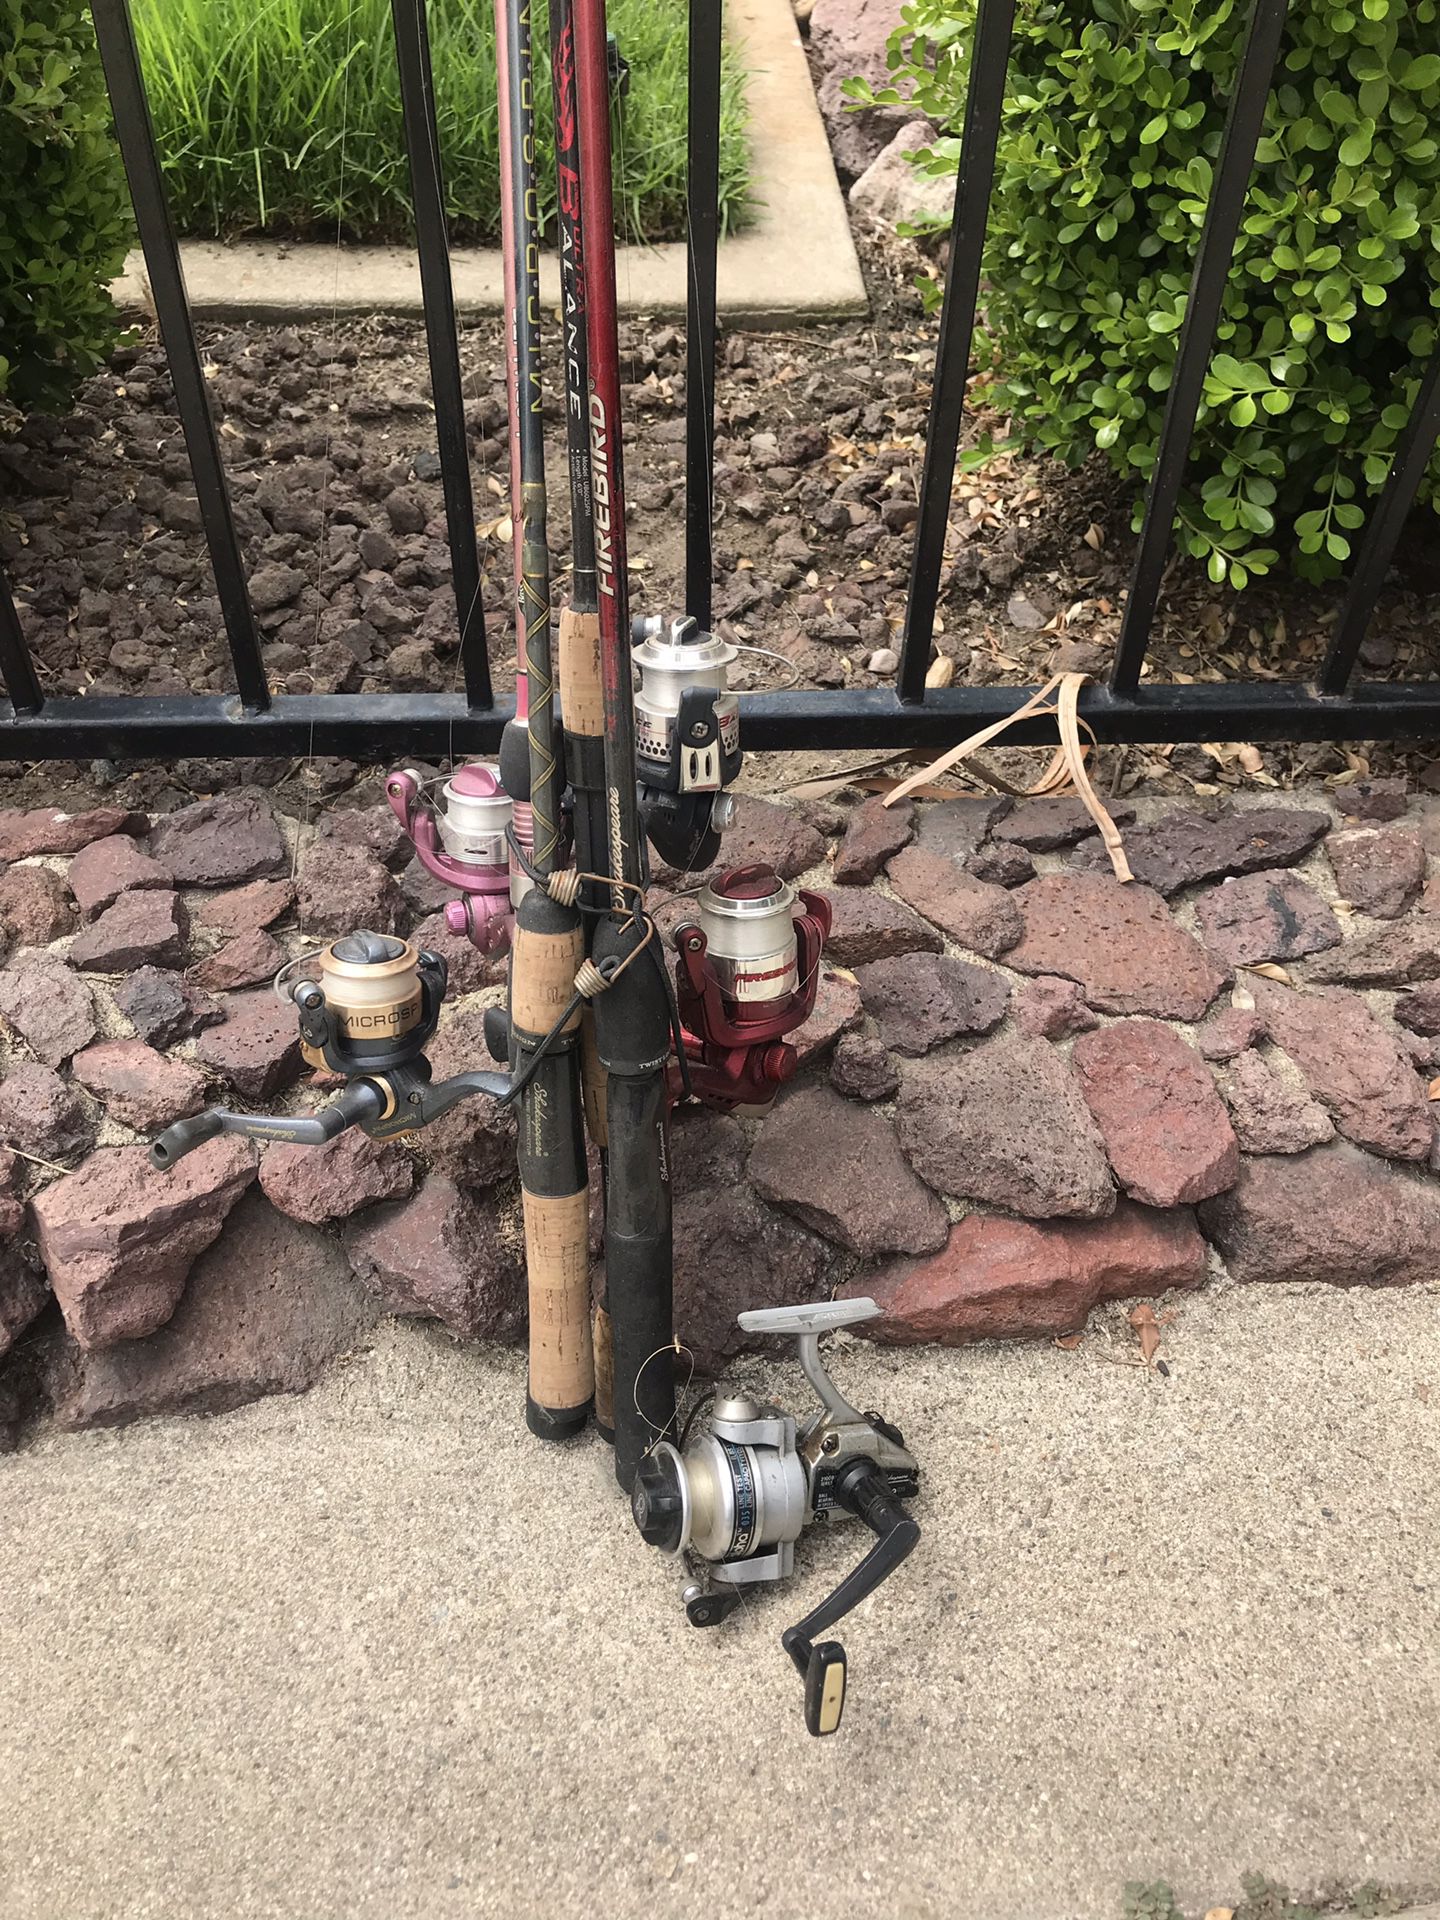 Fishing poles & gear